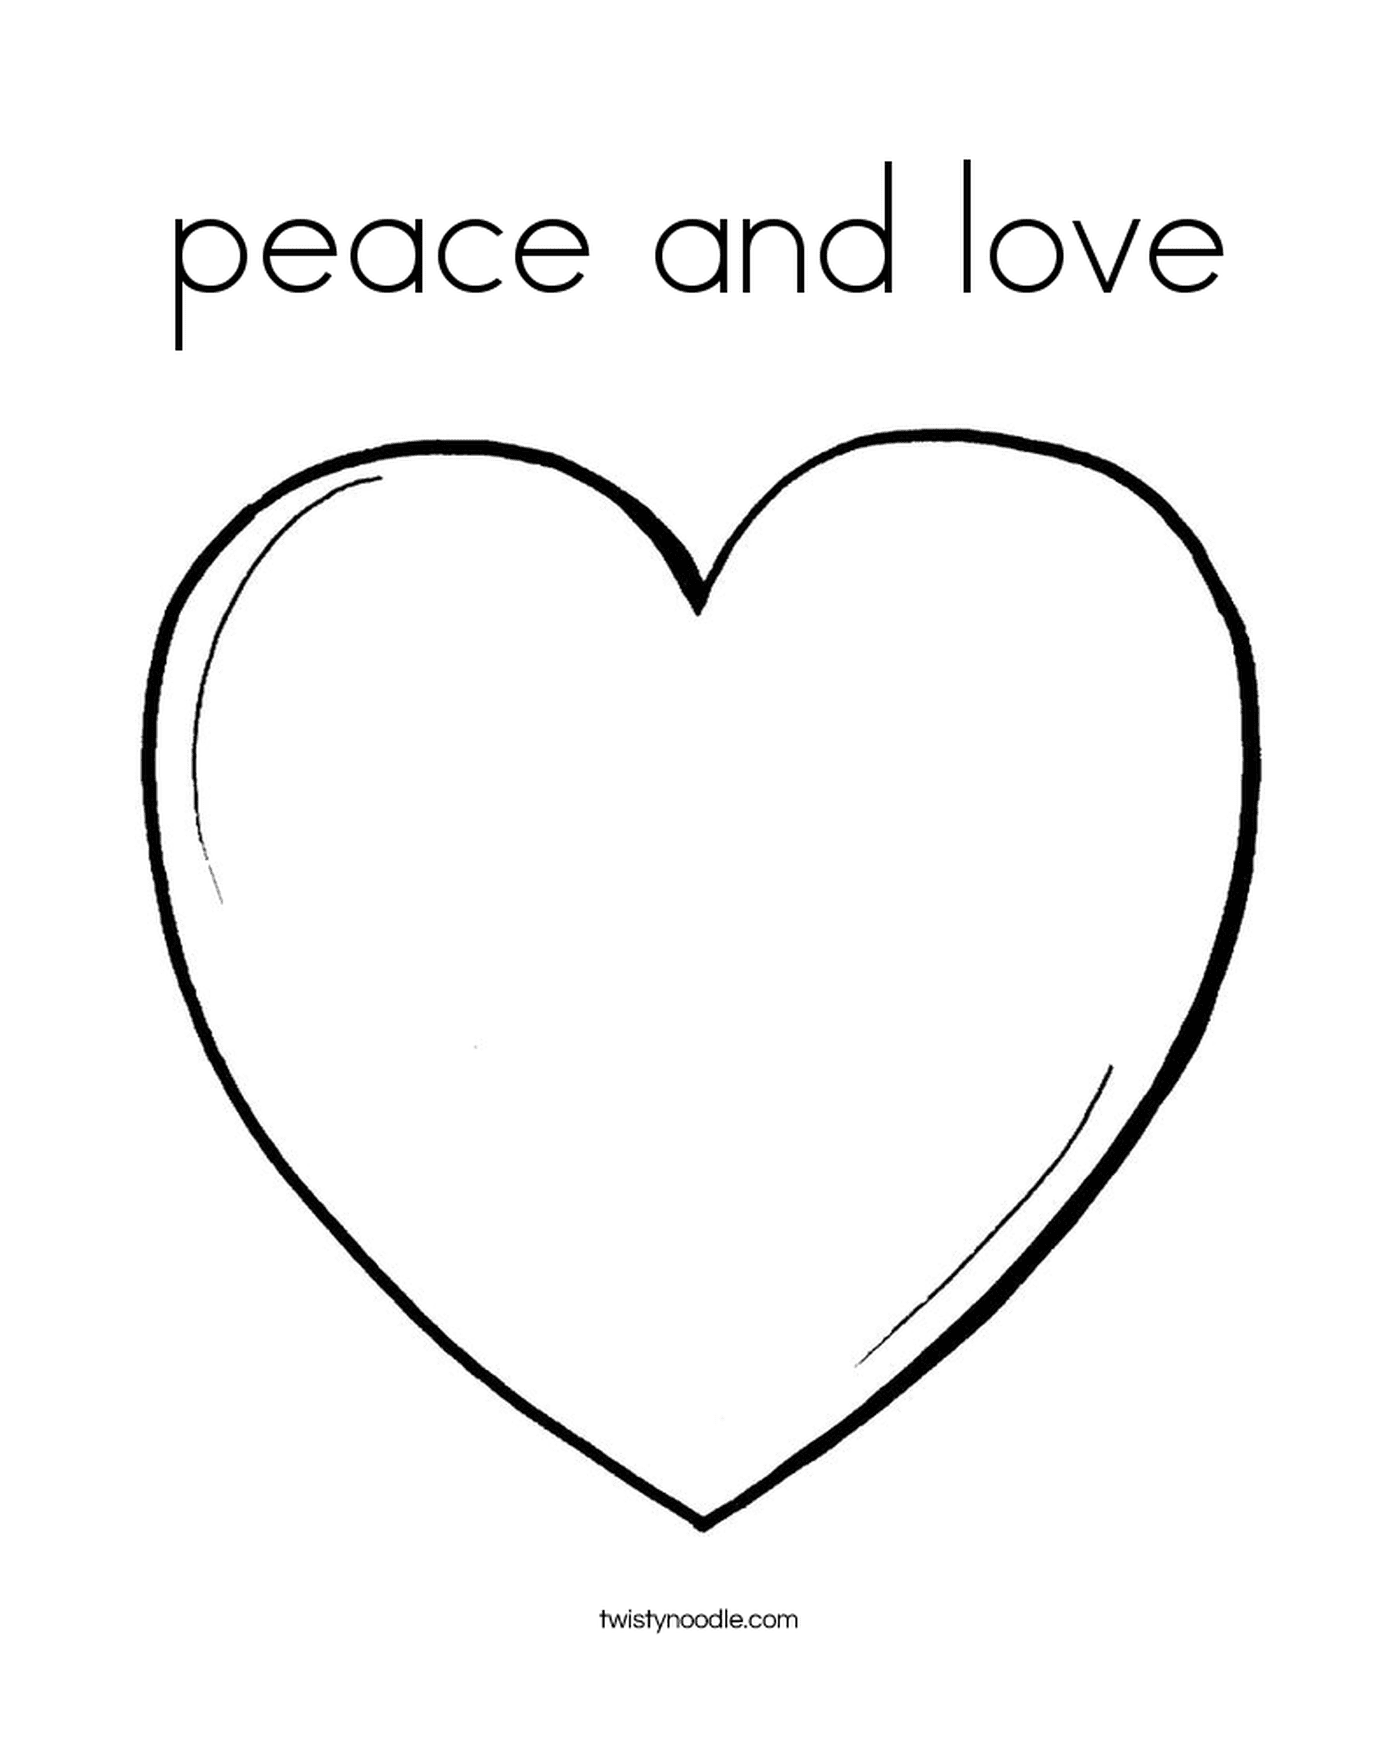  和平和爱心的心 